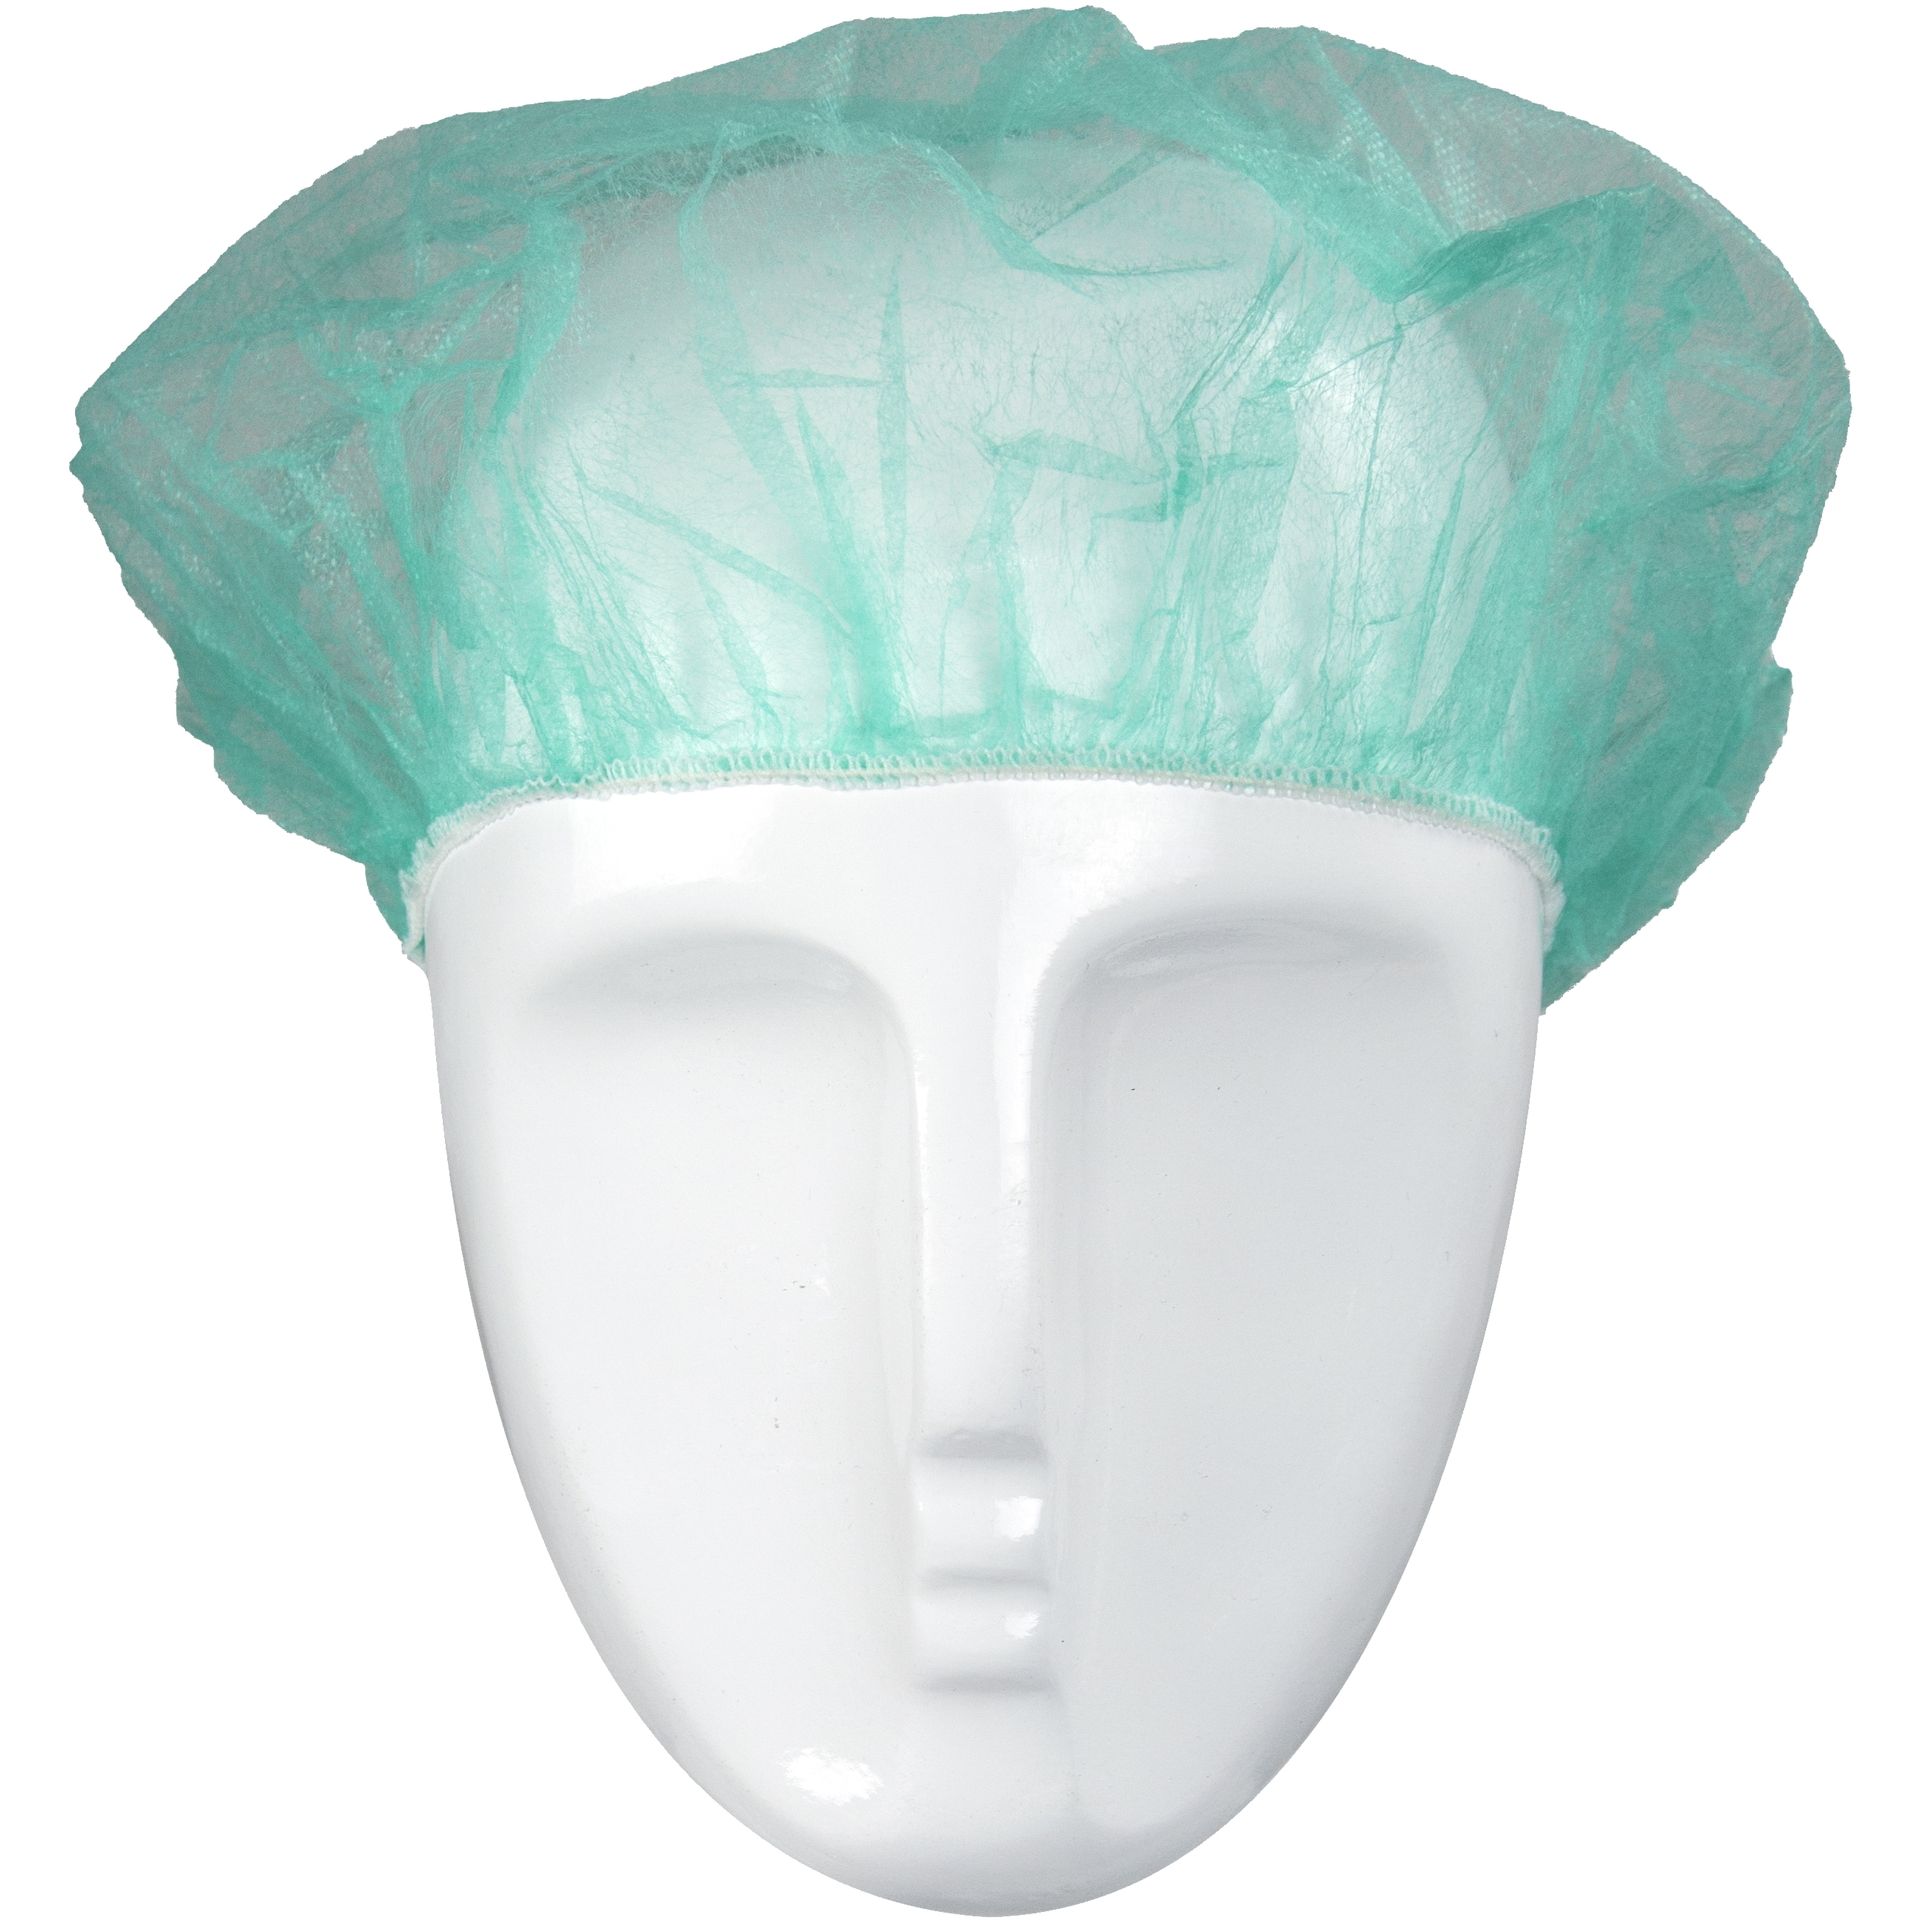 ASATEX-Hygiene, Einweg-Kopfhaube Barettform H52G, grün, VE = 10 Pkg. á 100 Stk.